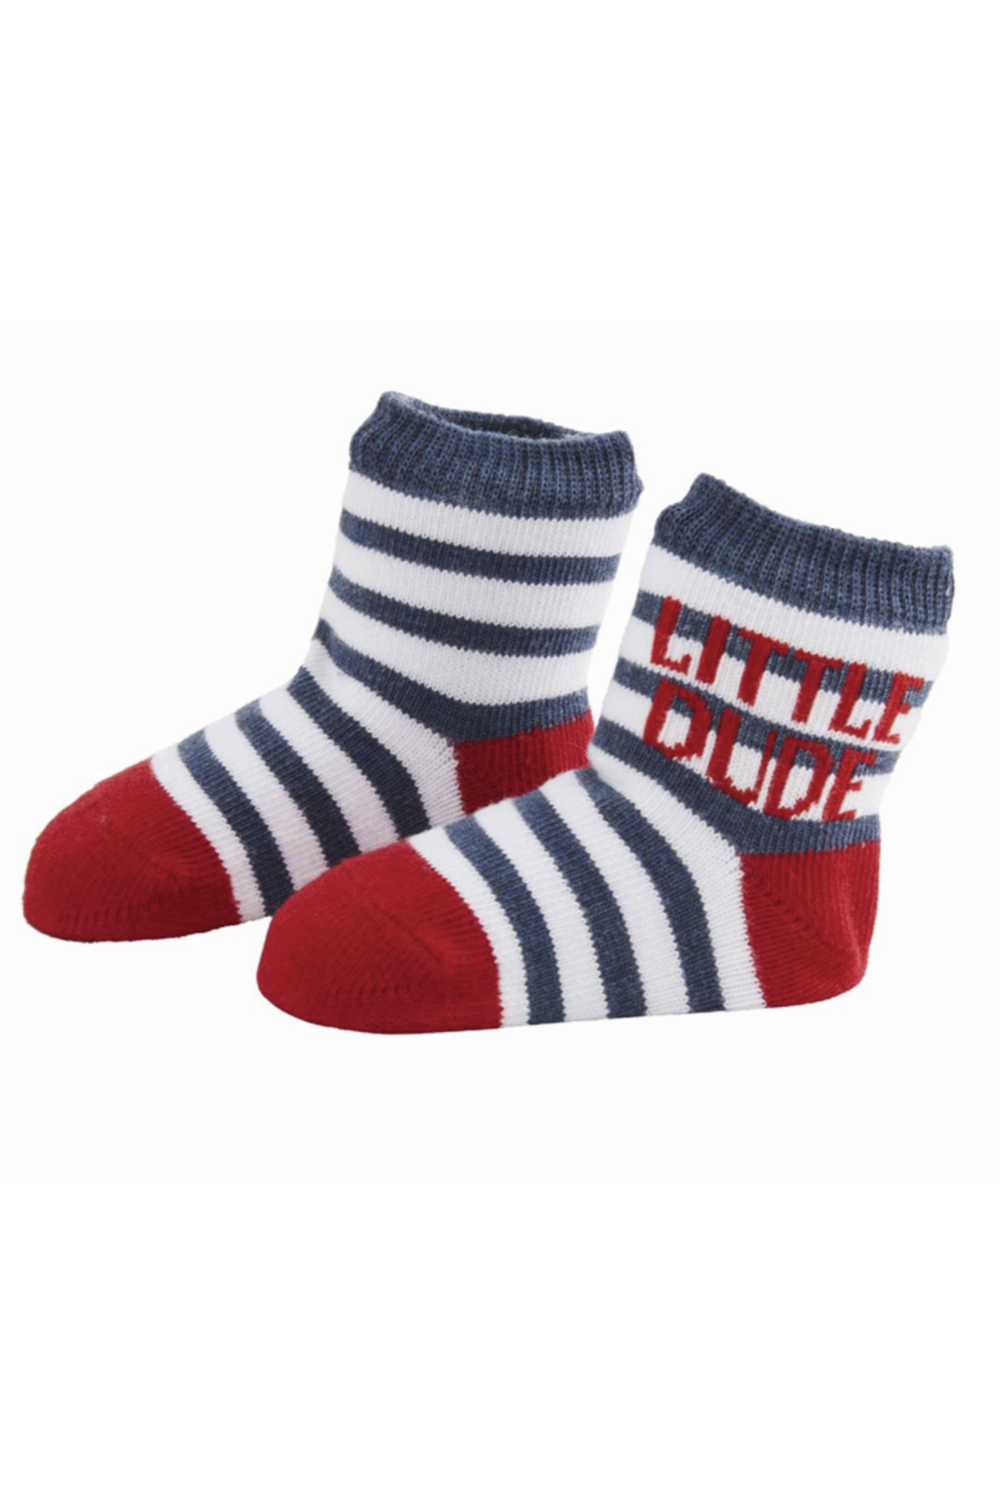 Baby Socks - Little Dude Striped